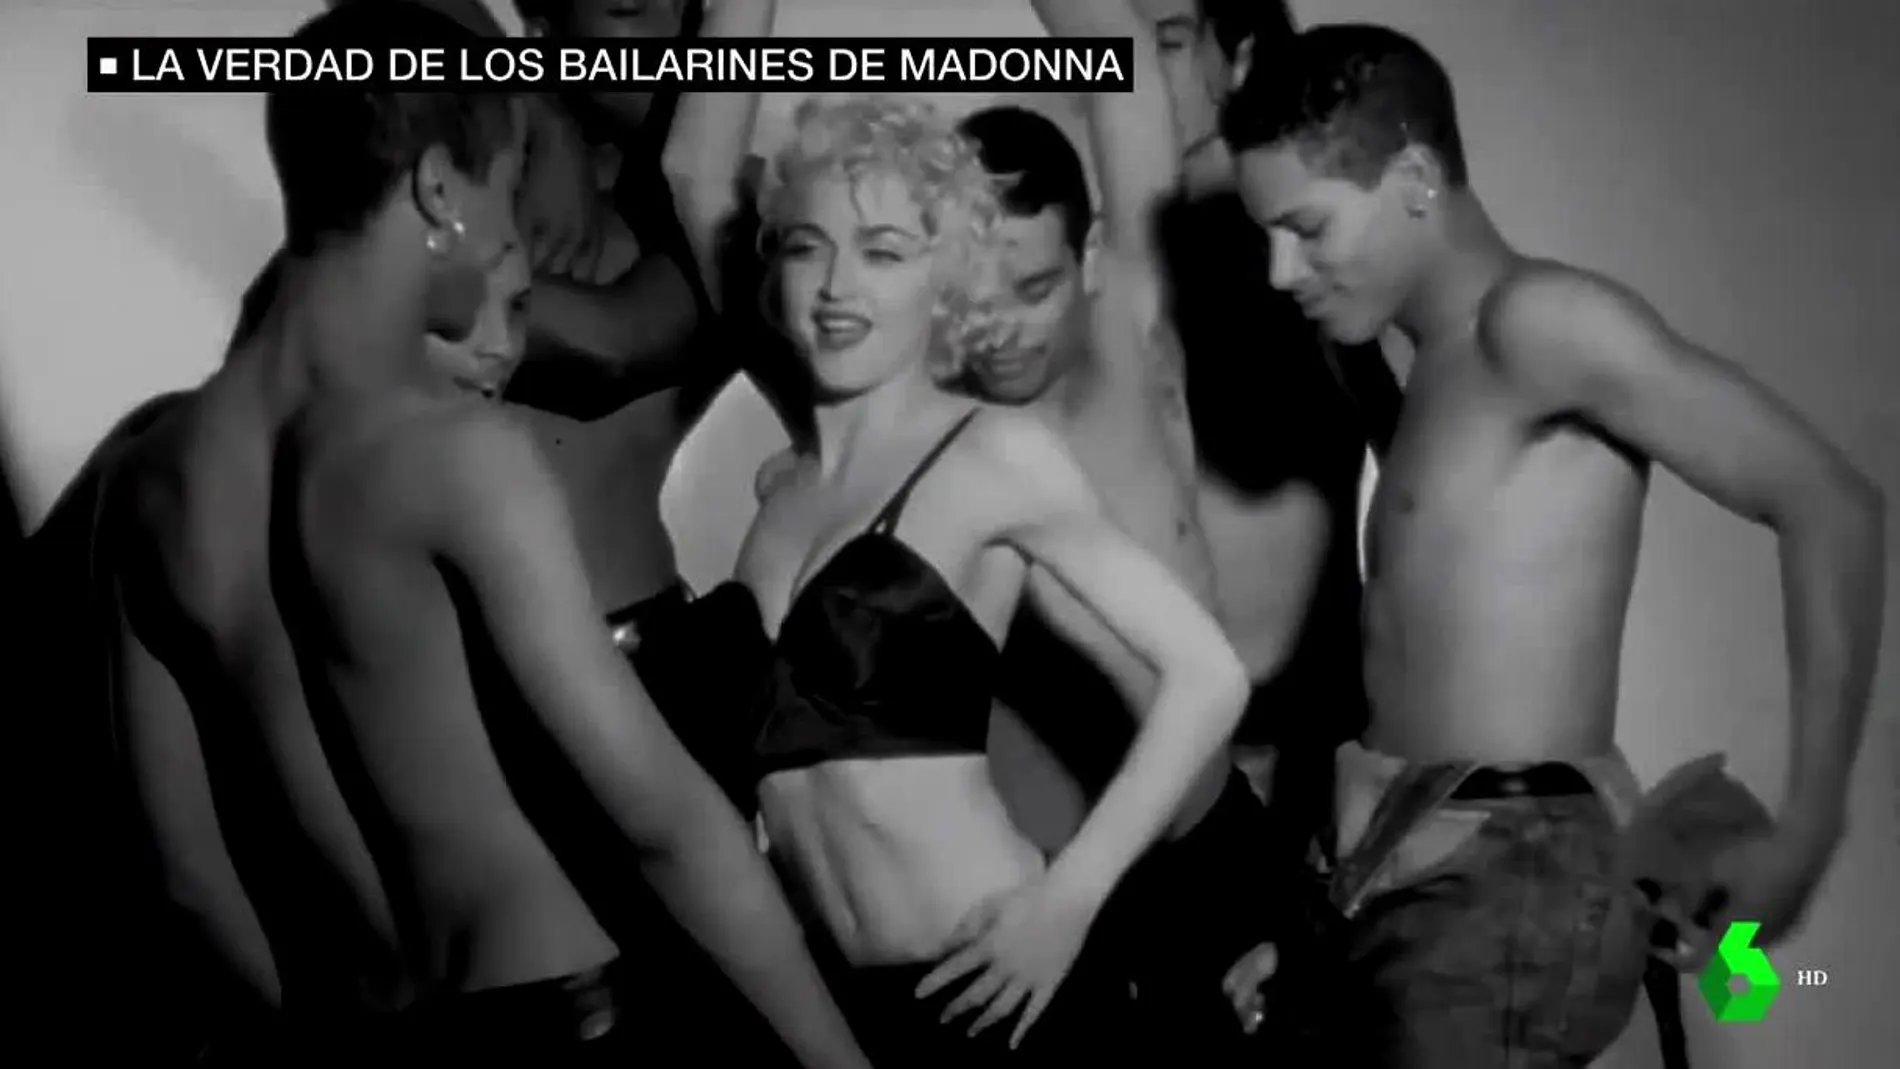 La verdad de los bailarines de Madonna